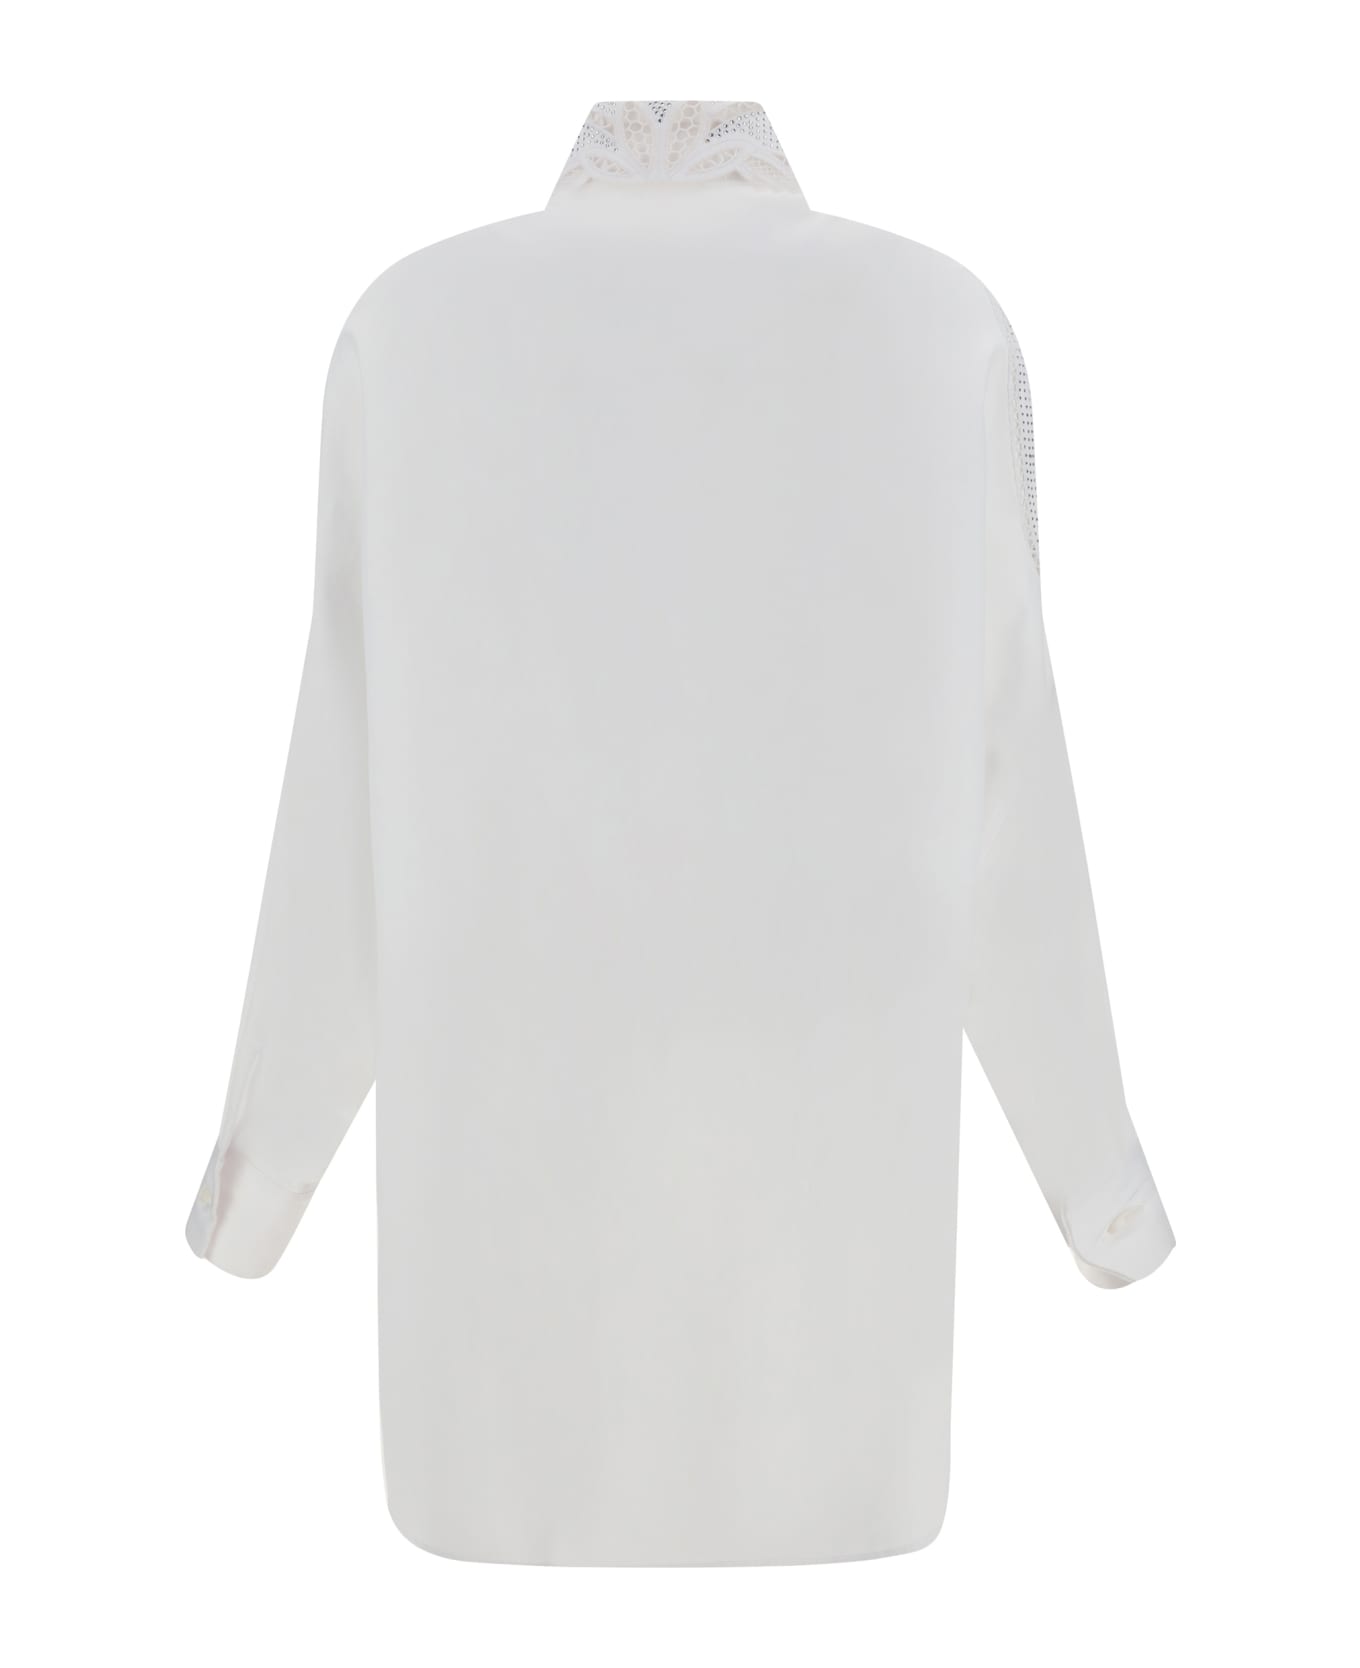 Ermanno Scervino Shirt - Bright White/ottico シャツ